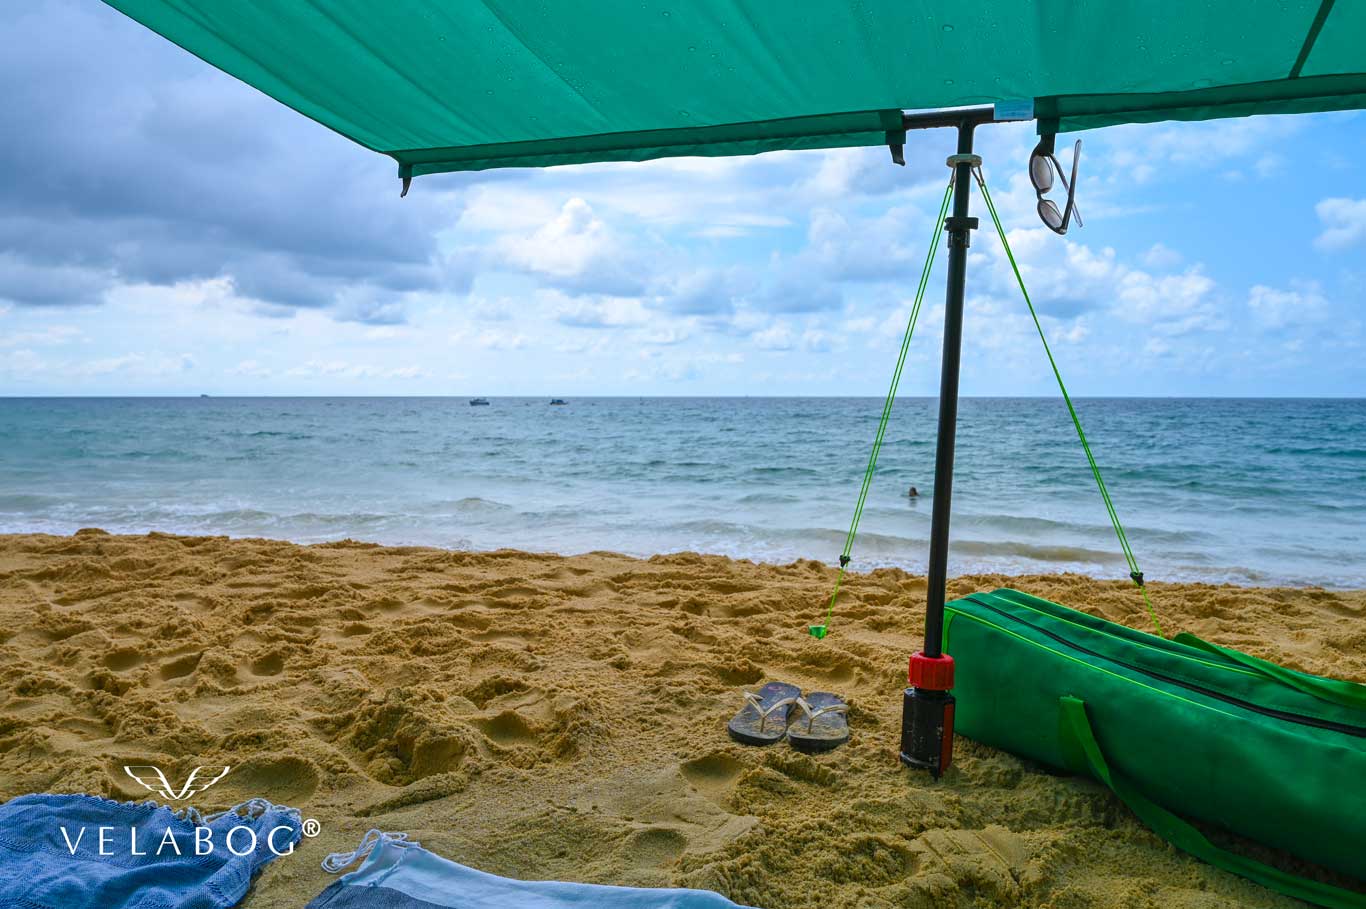 Voile d’ombrage tente plage Velabog Breeze, vert. Meilleure protection anti-UV pour la plage même en cas d’averse de courte durée. Le meilleur auvent de plage. Option de montage - pas de vent, vent faible ou vent en rafales. Vue de dessous. Zoom.